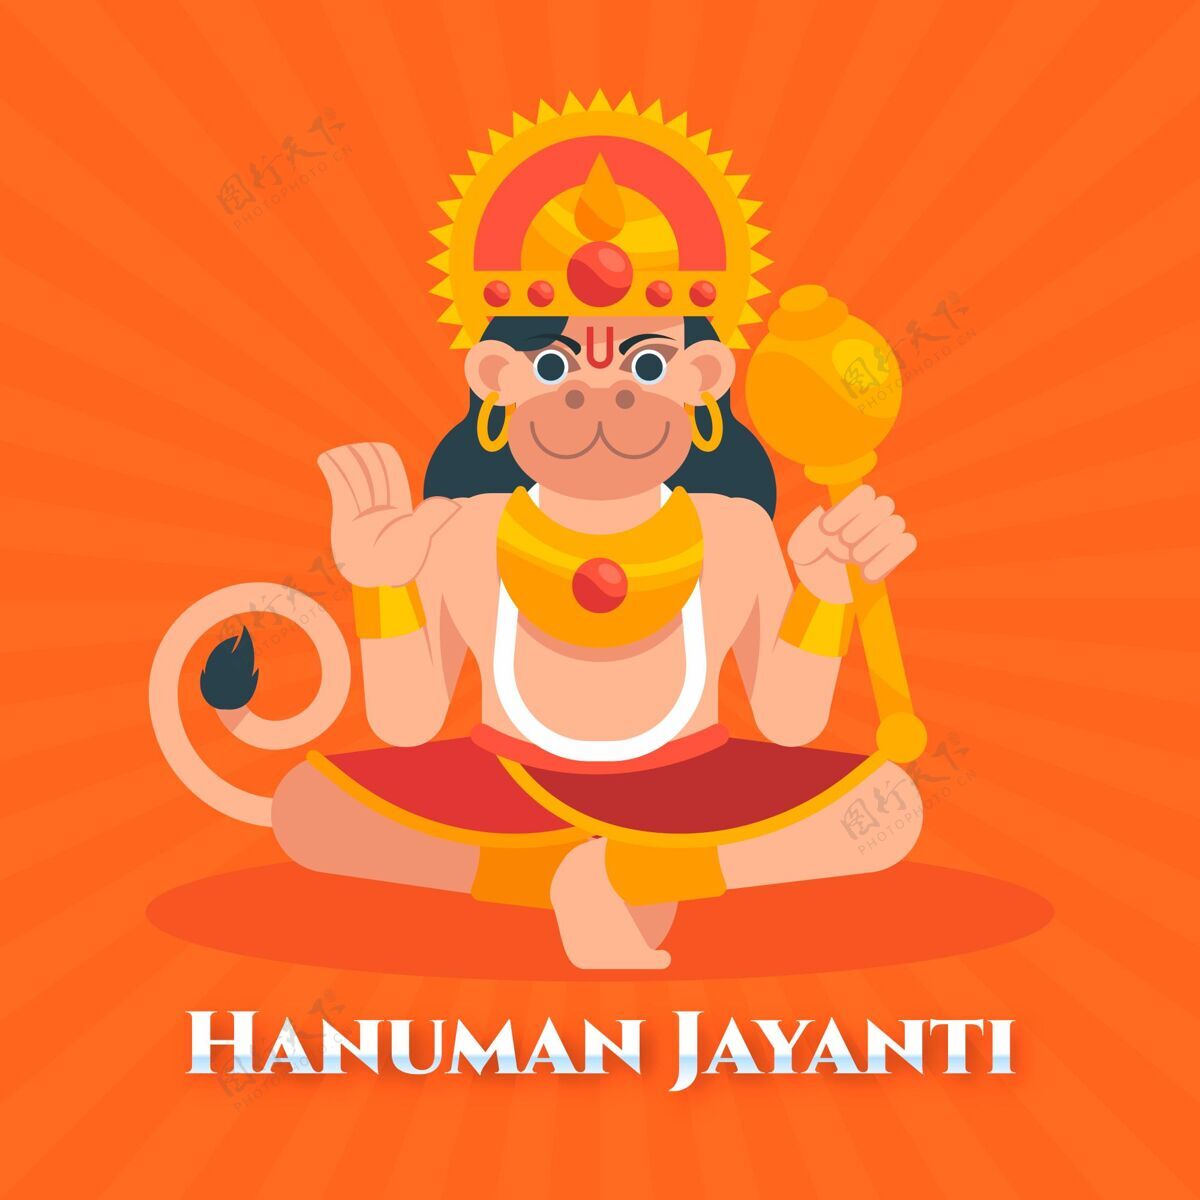 庆祝平面哈努曼jayanti插图平面设计节日宗教